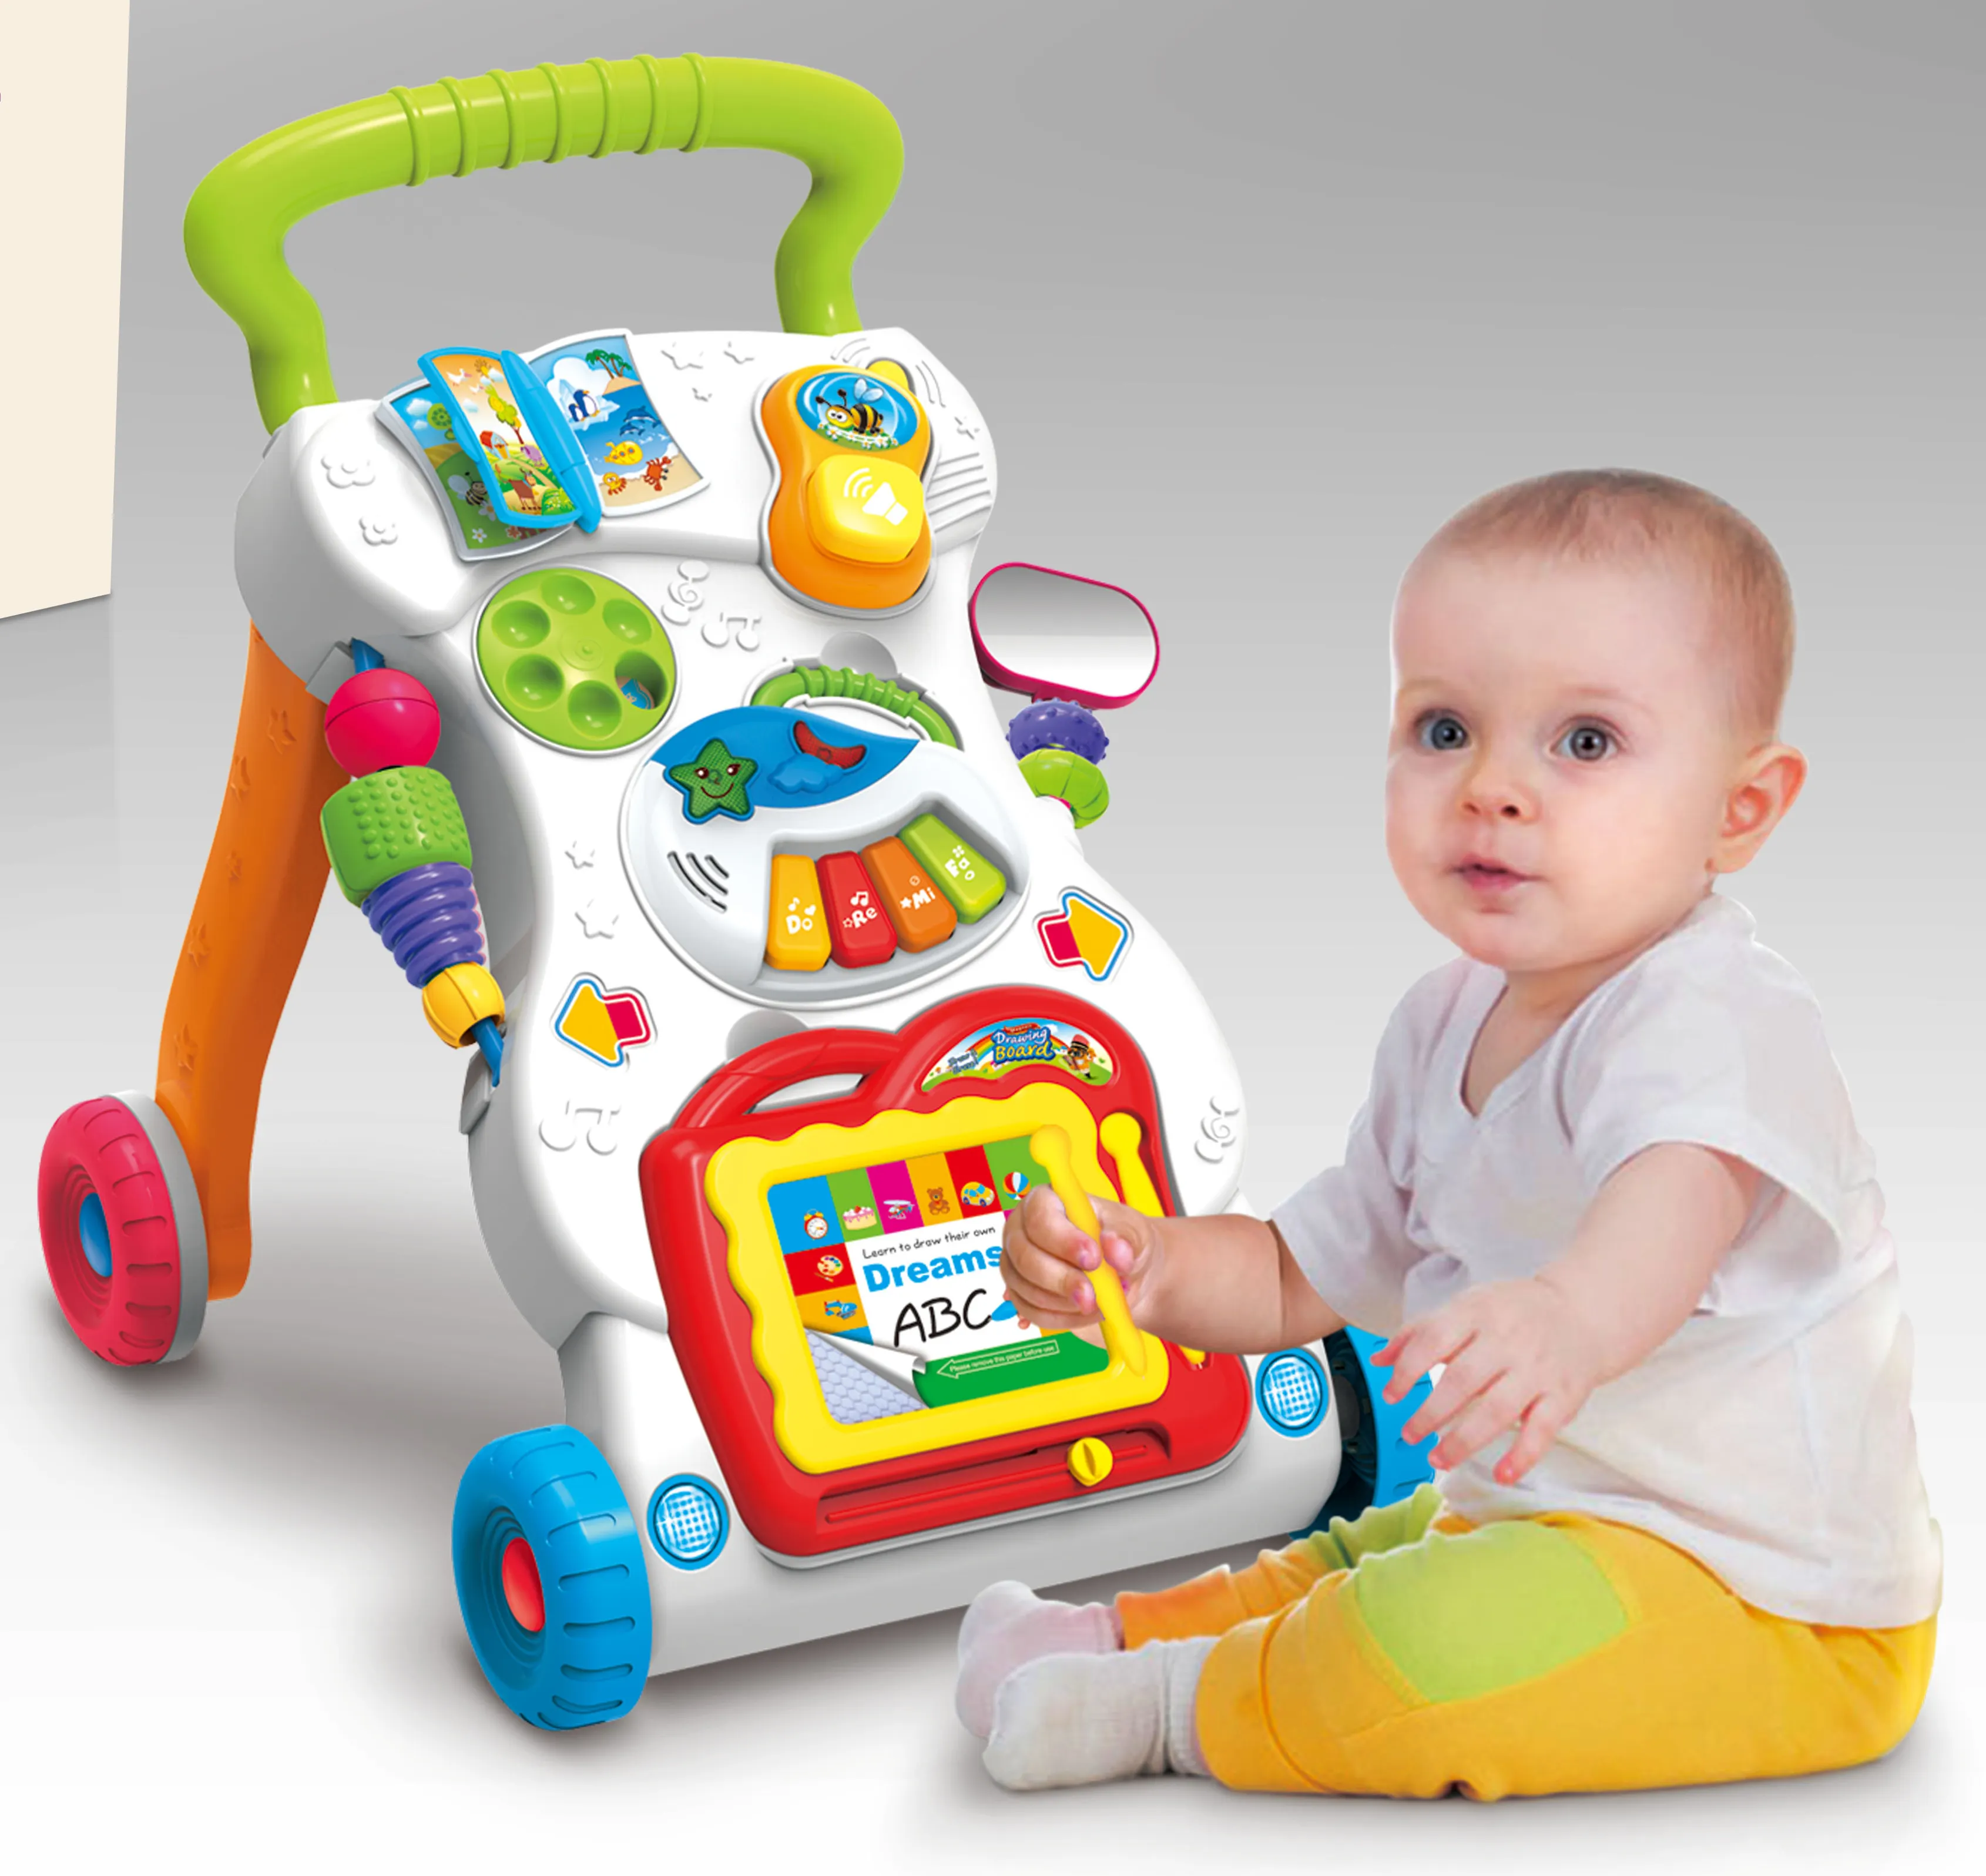 Hoge Kwaliteit Baby Speelgoed Muziek Leren Speelgoed Voor Baby Educatief Speelgoed Met Bsci, EN71, EN62115